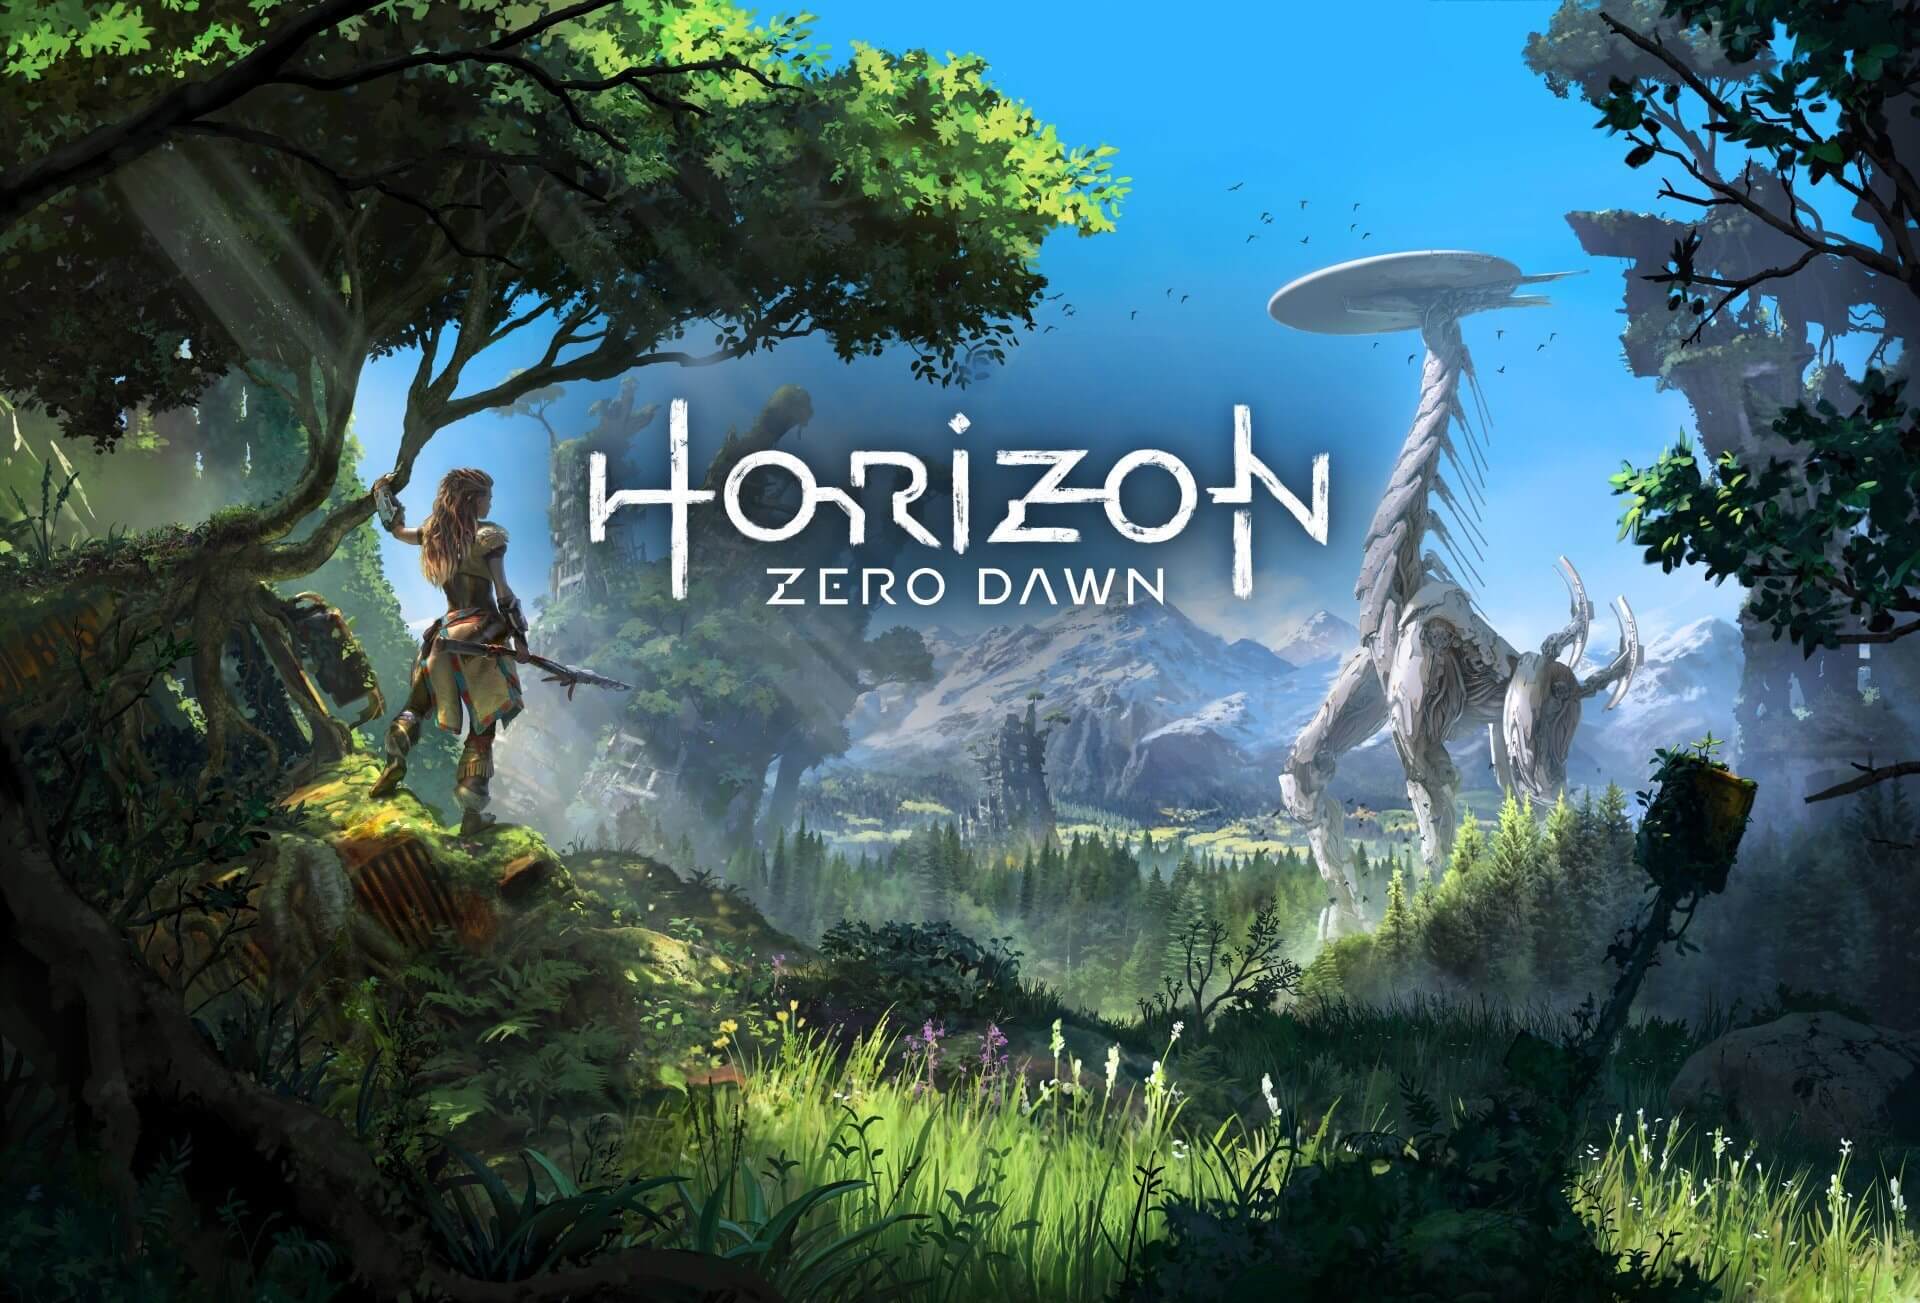 HORIZON ZERO DAWN é aquele jogo OK e é isso #horizonzerodawn #horizonz